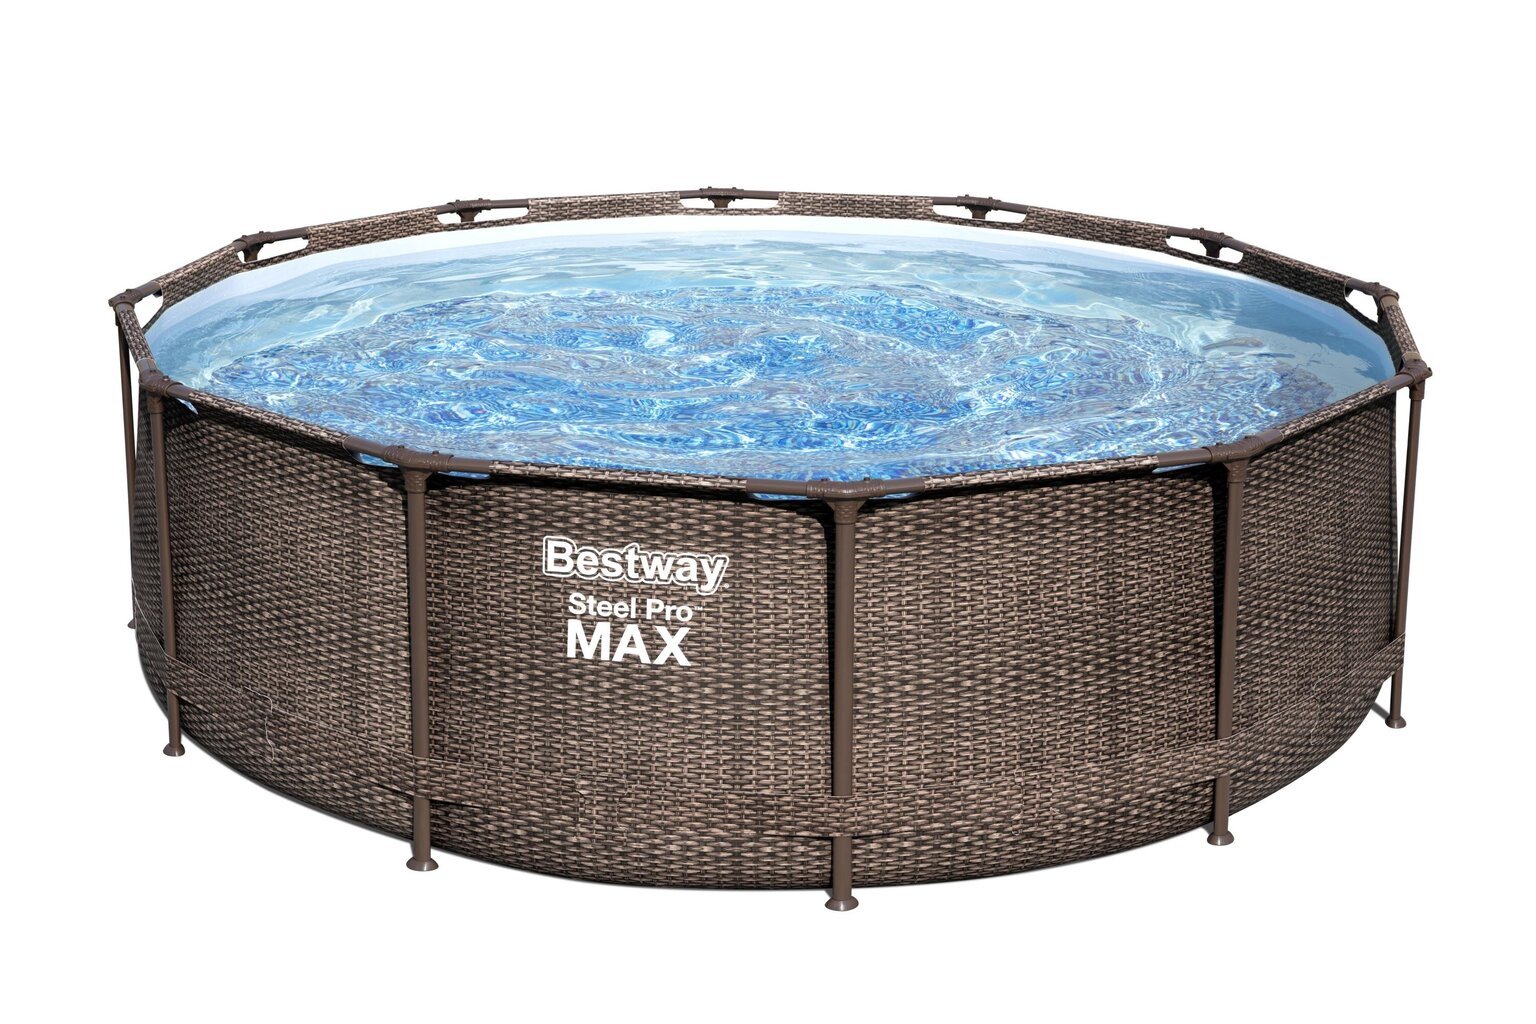 Karkasinis baseinas Bestway Steel Pro Max Swim Vista 366x100 cm, su filtru kaina ir informacija | Baseinai | pigu.lt